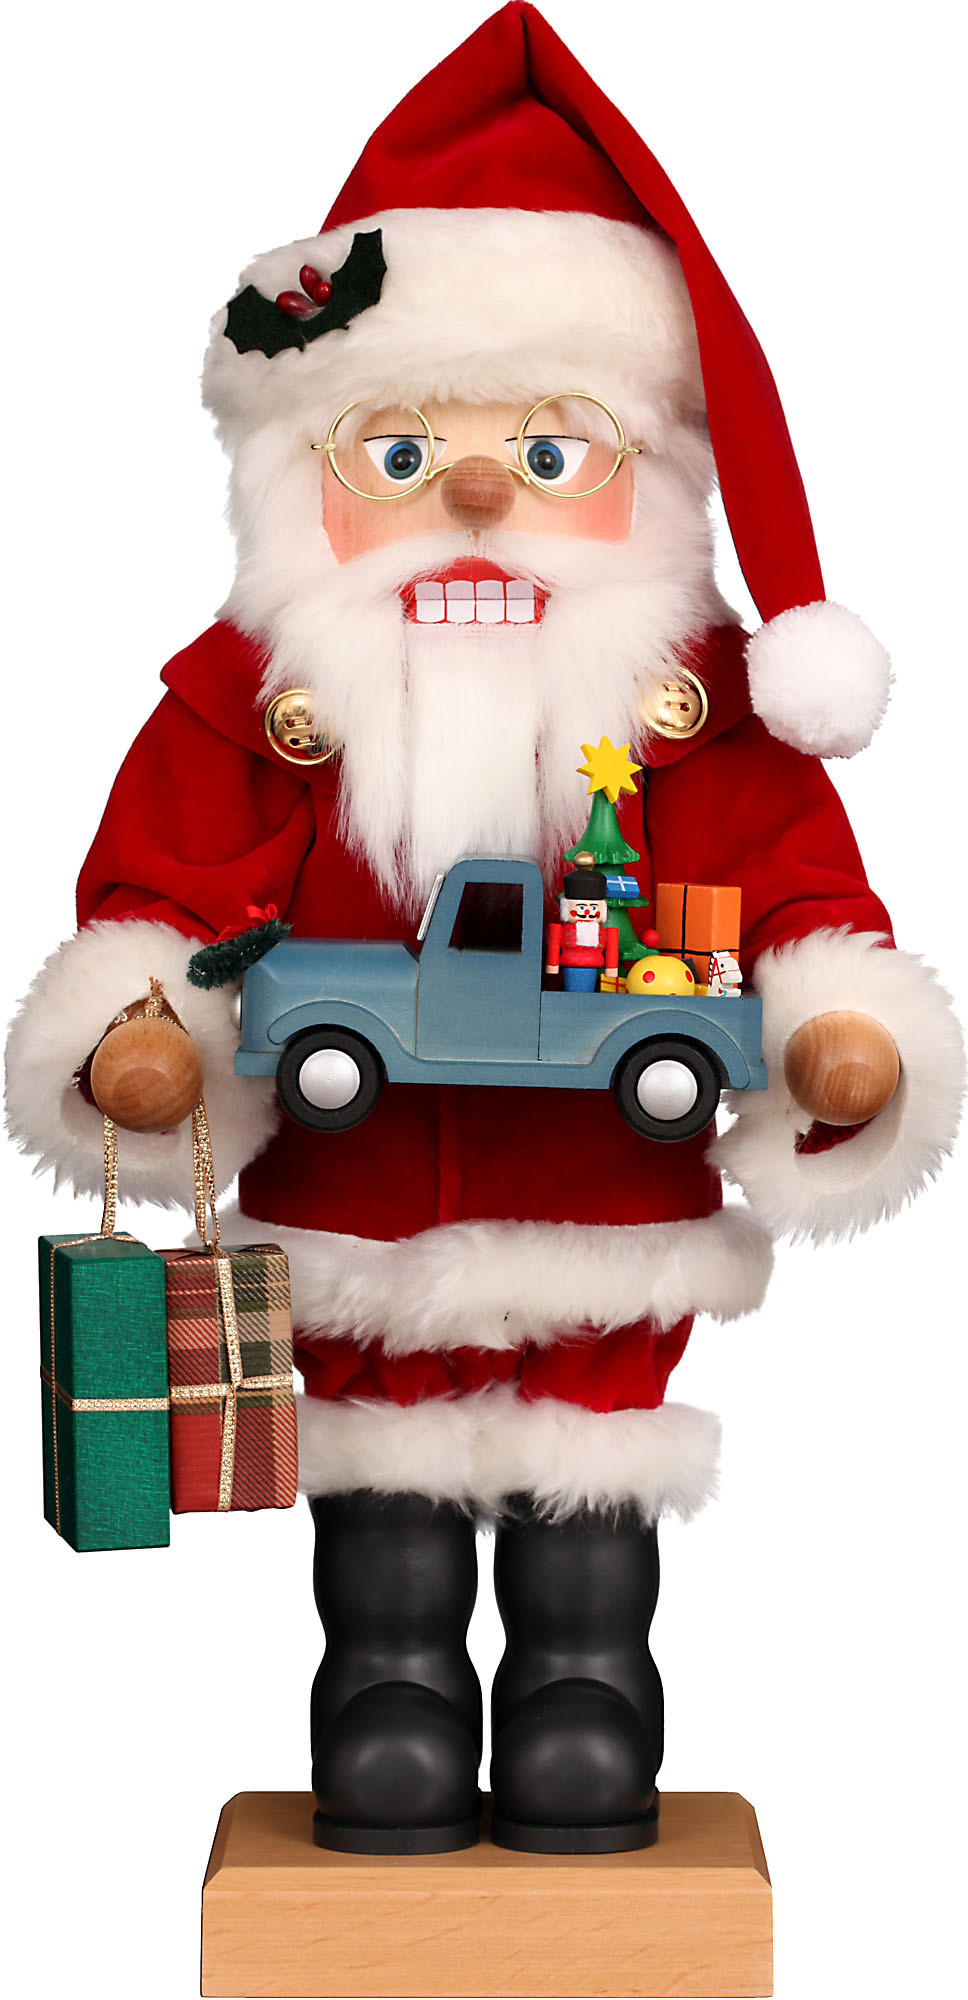 Nussknacker Weihnachtsmann mit Spielzeugauto